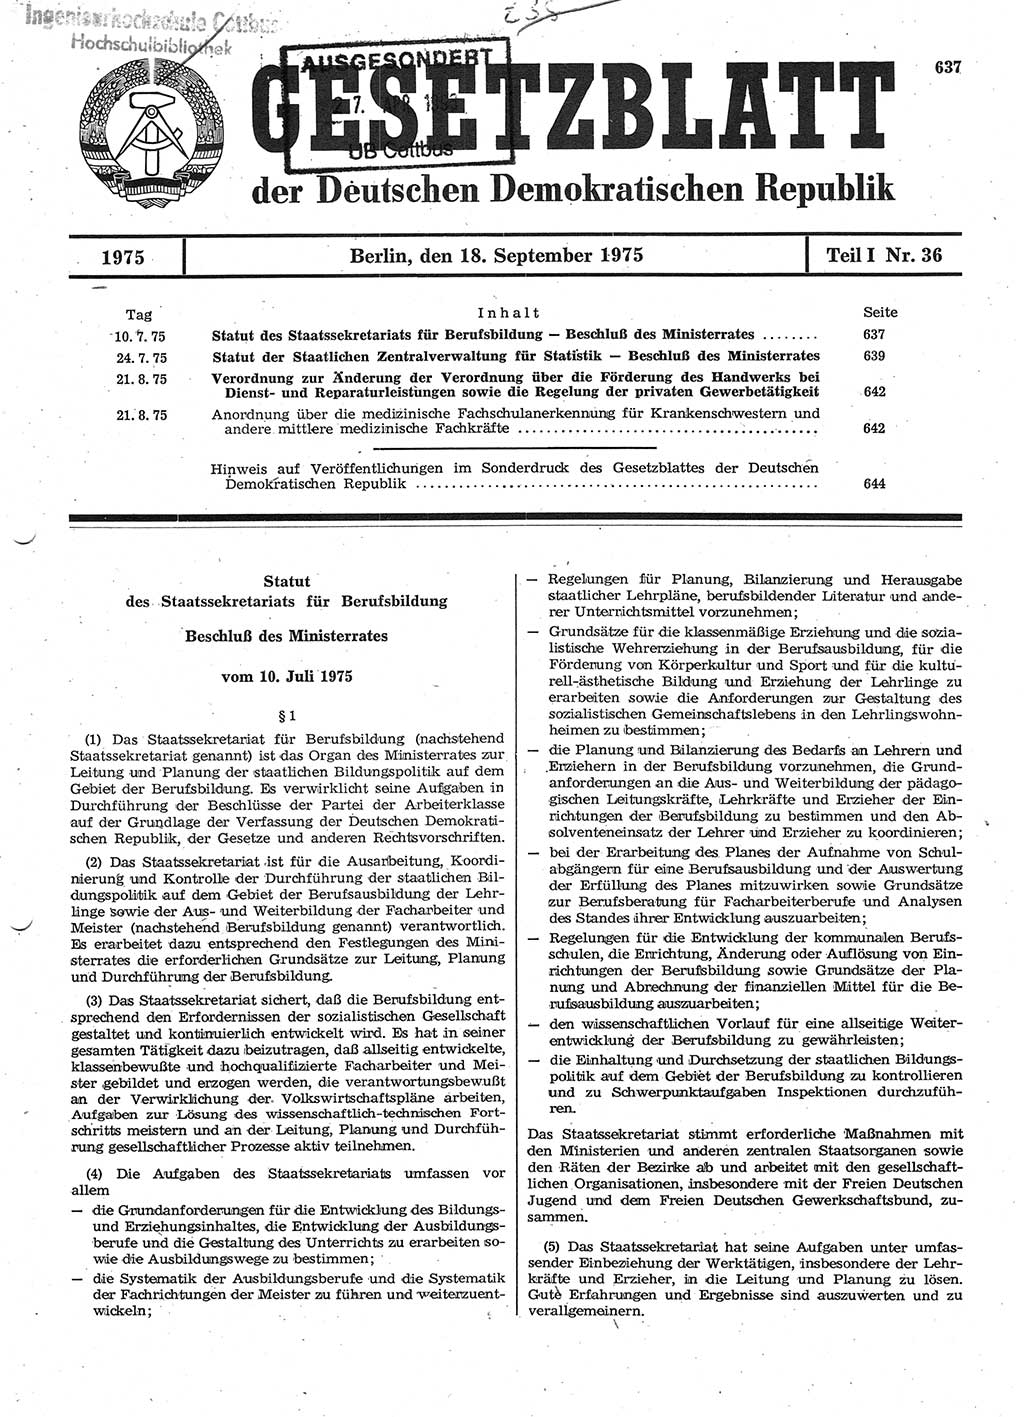 Gesetzblatt (GBl.) der Deutschen Demokratischen Republik (DDR) Teil Ⅰ 1975, Seite 637 (GBl. DDR Ⅰ 1975, S. 637)